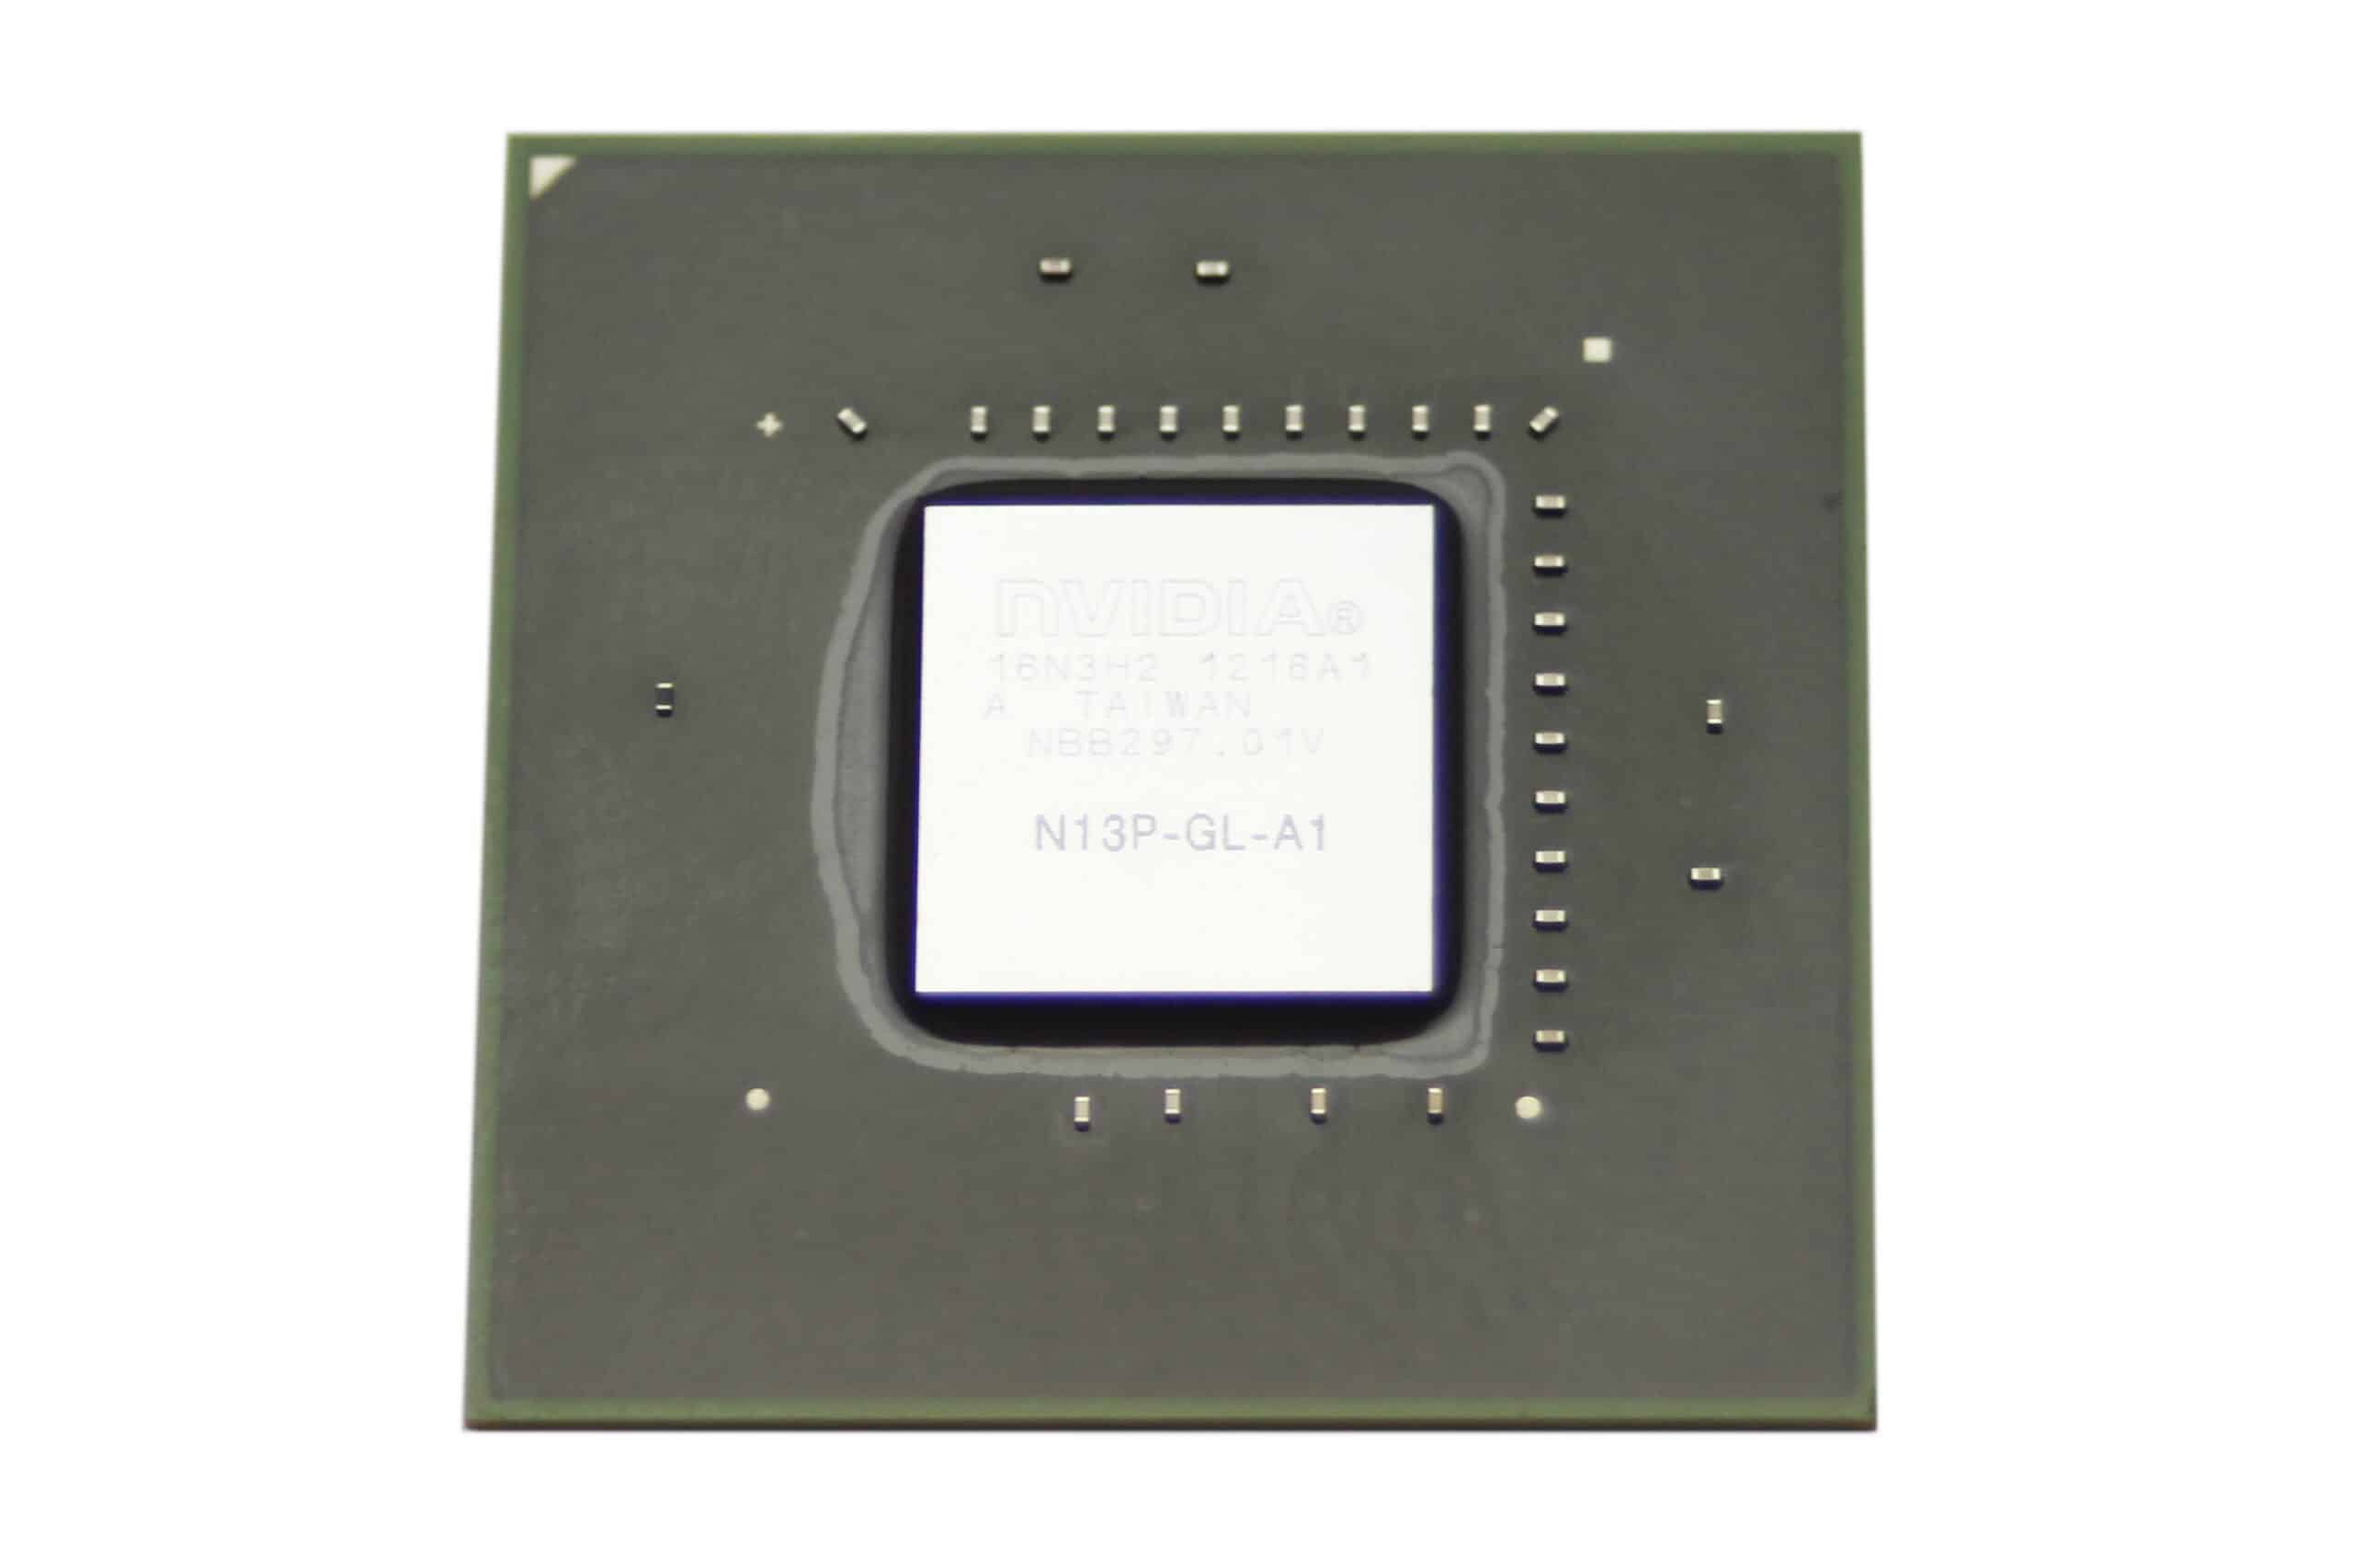 Видеочип NVIDIA n13p-gl2-a1. Чипы NVIDIA С металлической крышкой. Intel 6 series chipset